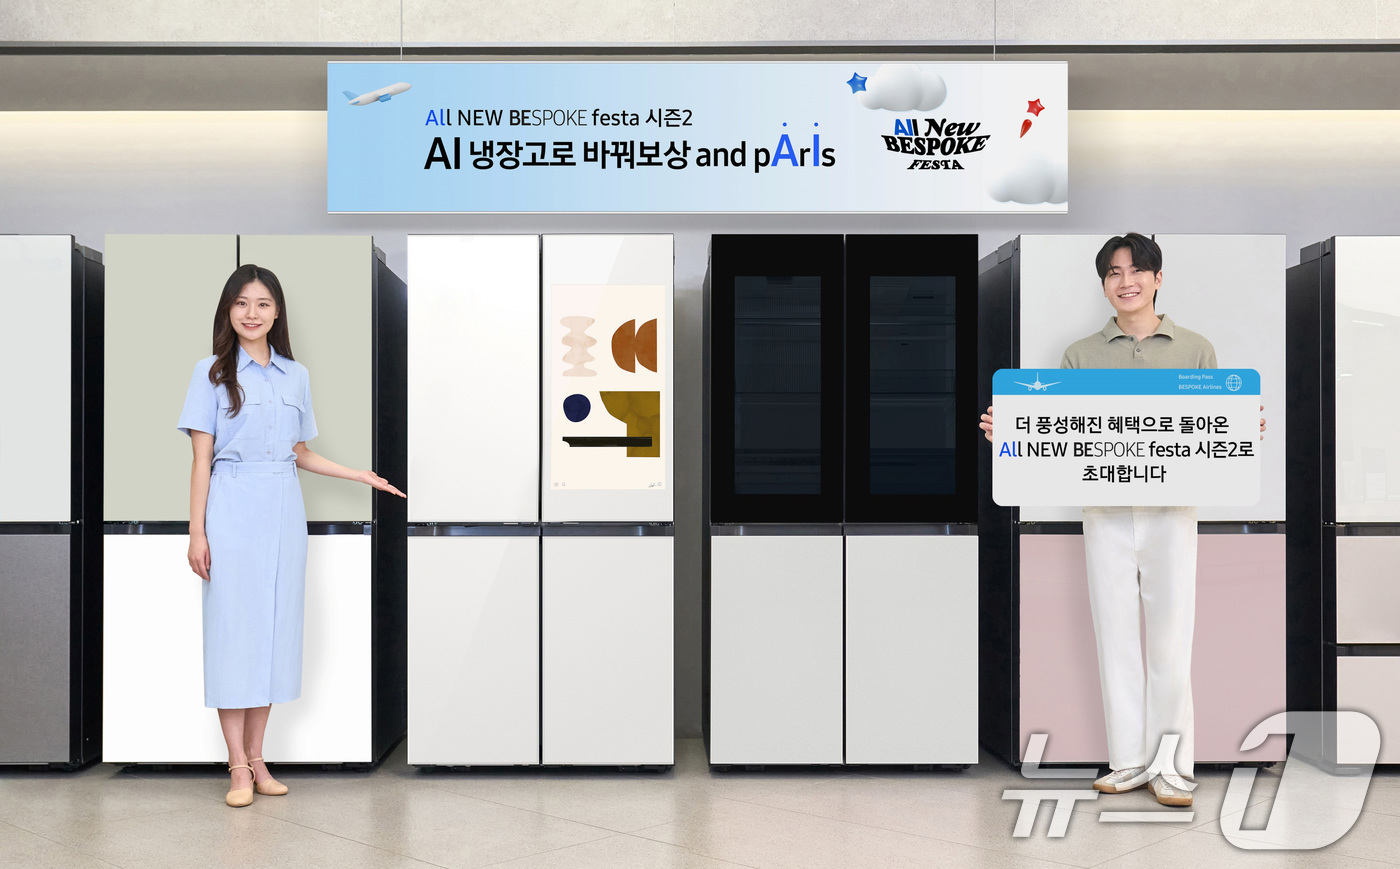 (서울=뉴스1) 박지혜 기자 = 삼성전자가 오는 9월 20일까지 비스포크 냉장고를 구매하면 하나투어 여행상품권 등을 제공하는 판촉 행사를 연다고 9일 밝혔다.구매처는 주요 온라인( …